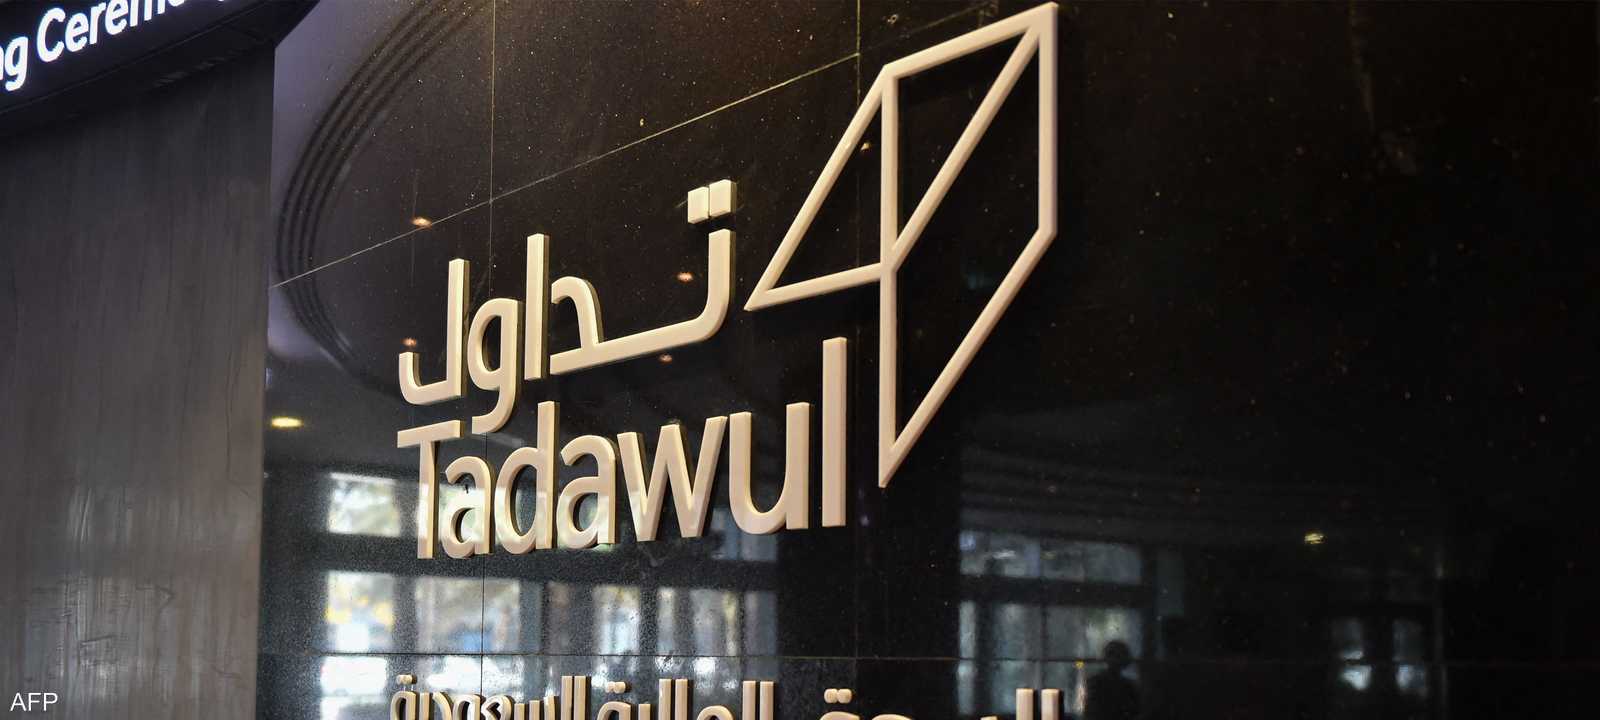 السوق السعودي - تداول - Tadawul